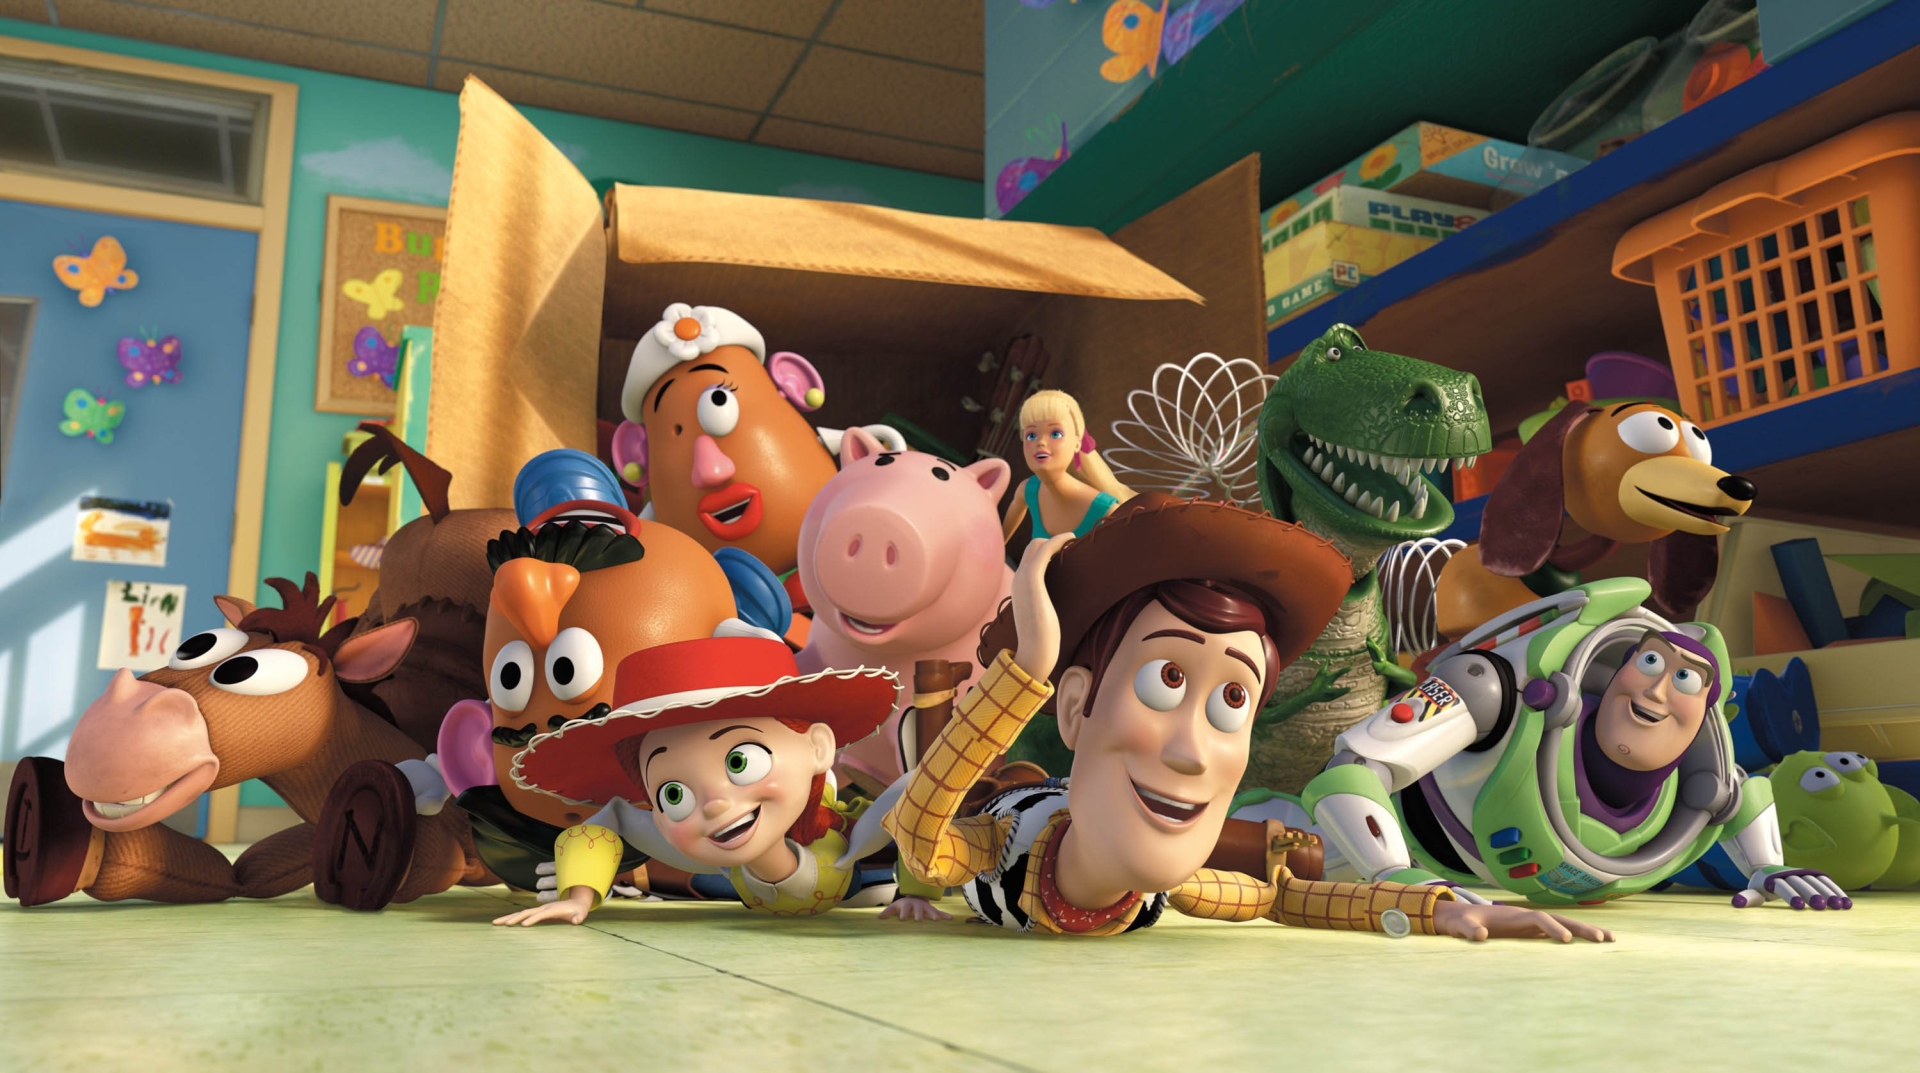 Nhóm đồ chơi trong bộ phim Toy Story đầy vui vẻ khi chơi đùa cùng nhau